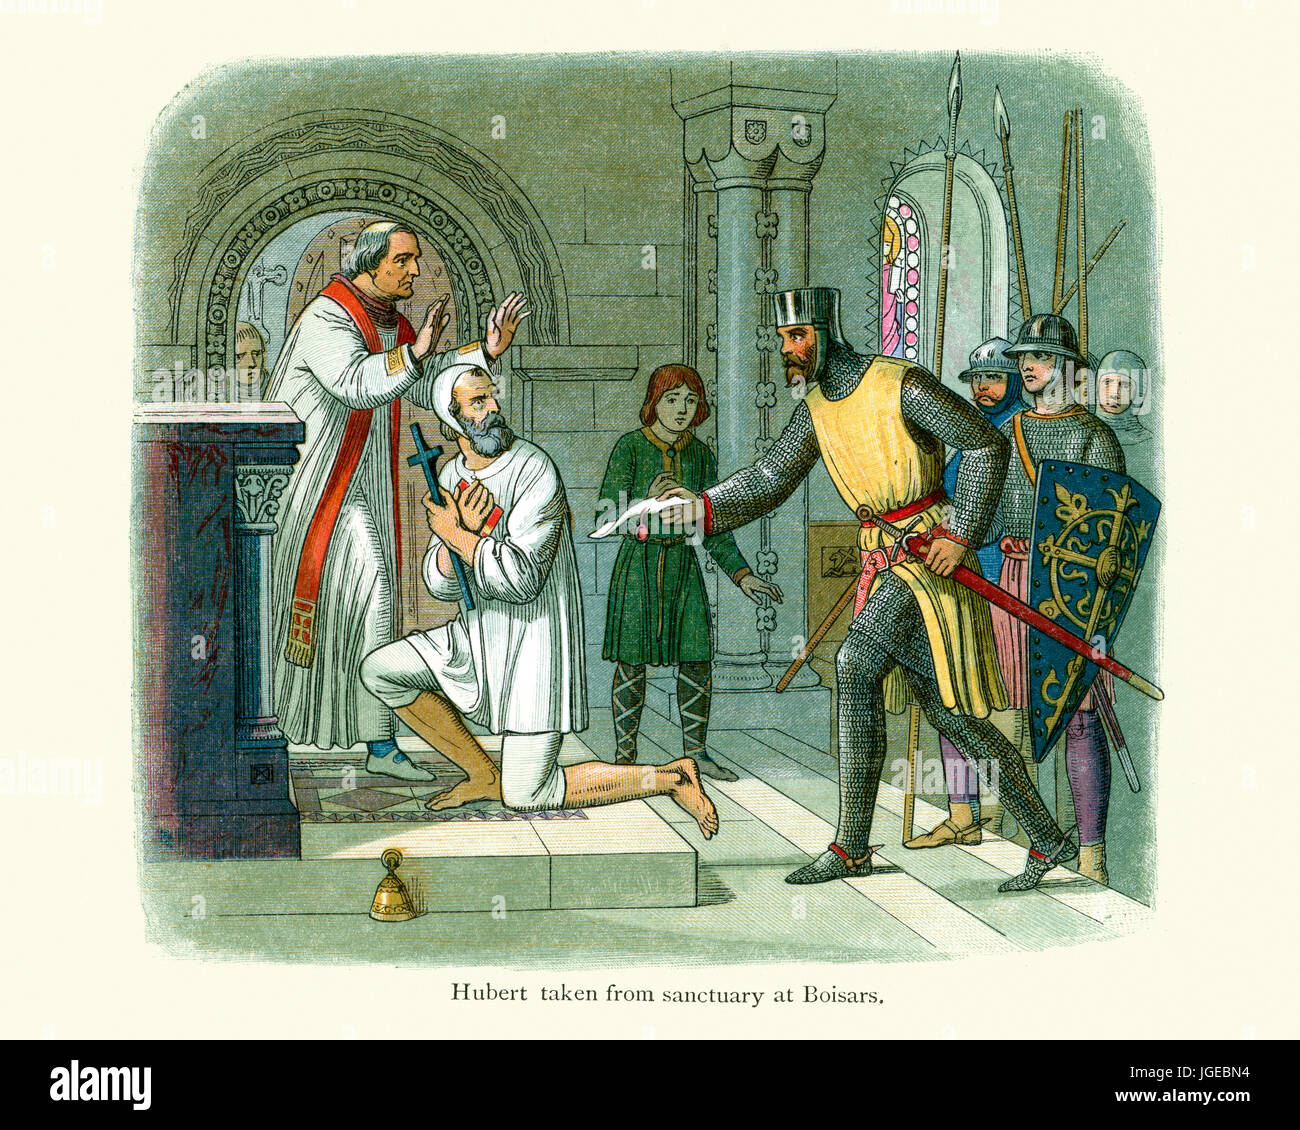 Hubert Heiligtum in Boisars, Frankreich im Jahre 1232 entnommen. Hubert de Burgh, 1. Earl of Kent, Justiziar von England und Irland und eine der am meisten Einfl Stockfoto